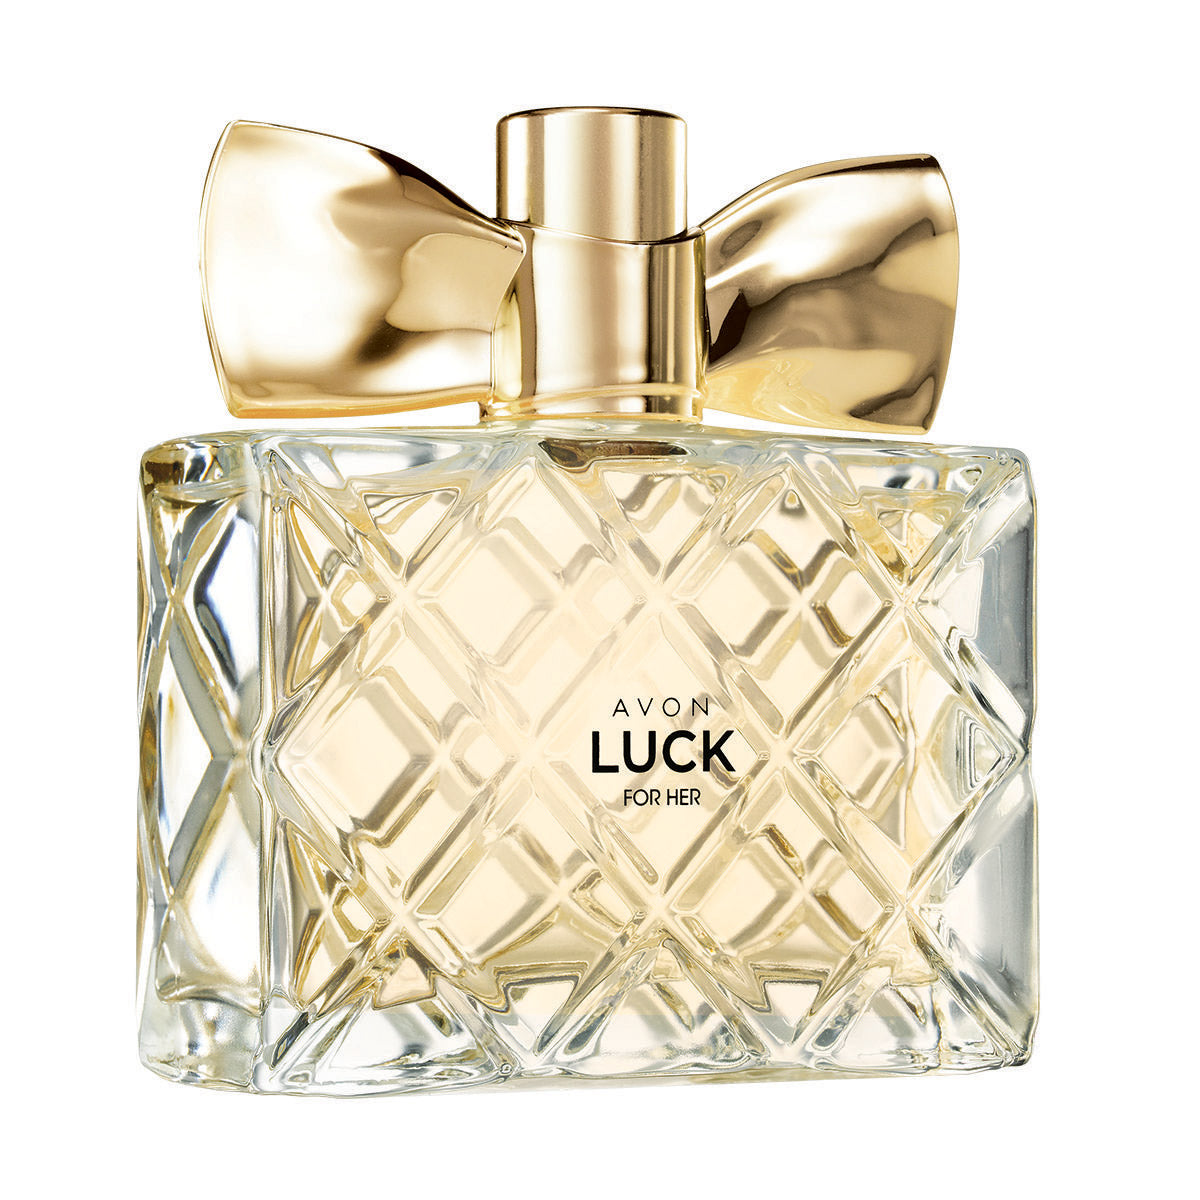 Avon Luck Eau de Parfüm Kadın 50ml